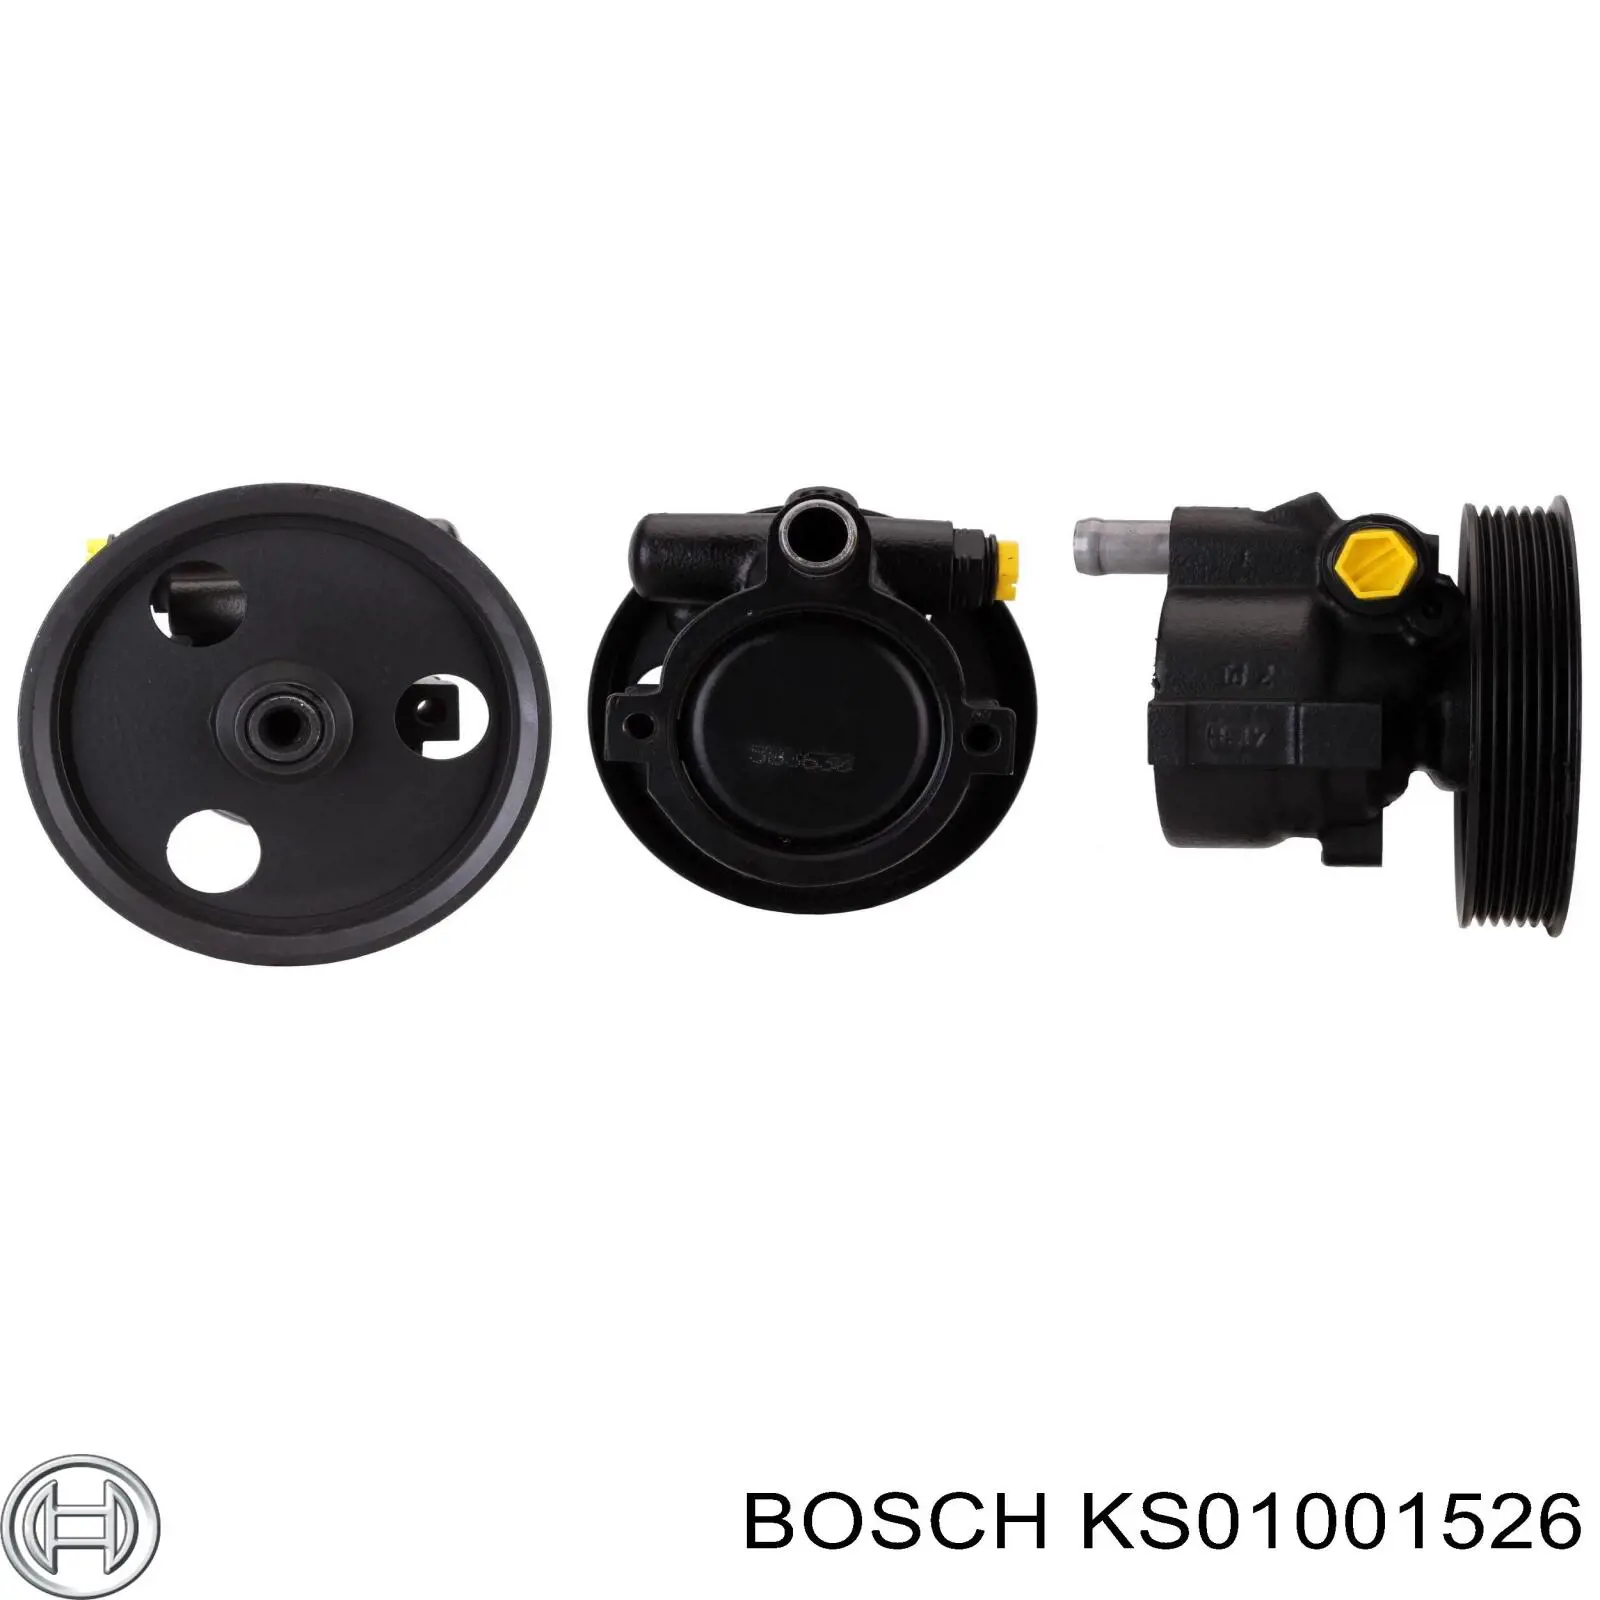 KS01001526 Bosch bomba da direção hidrâulica assistida